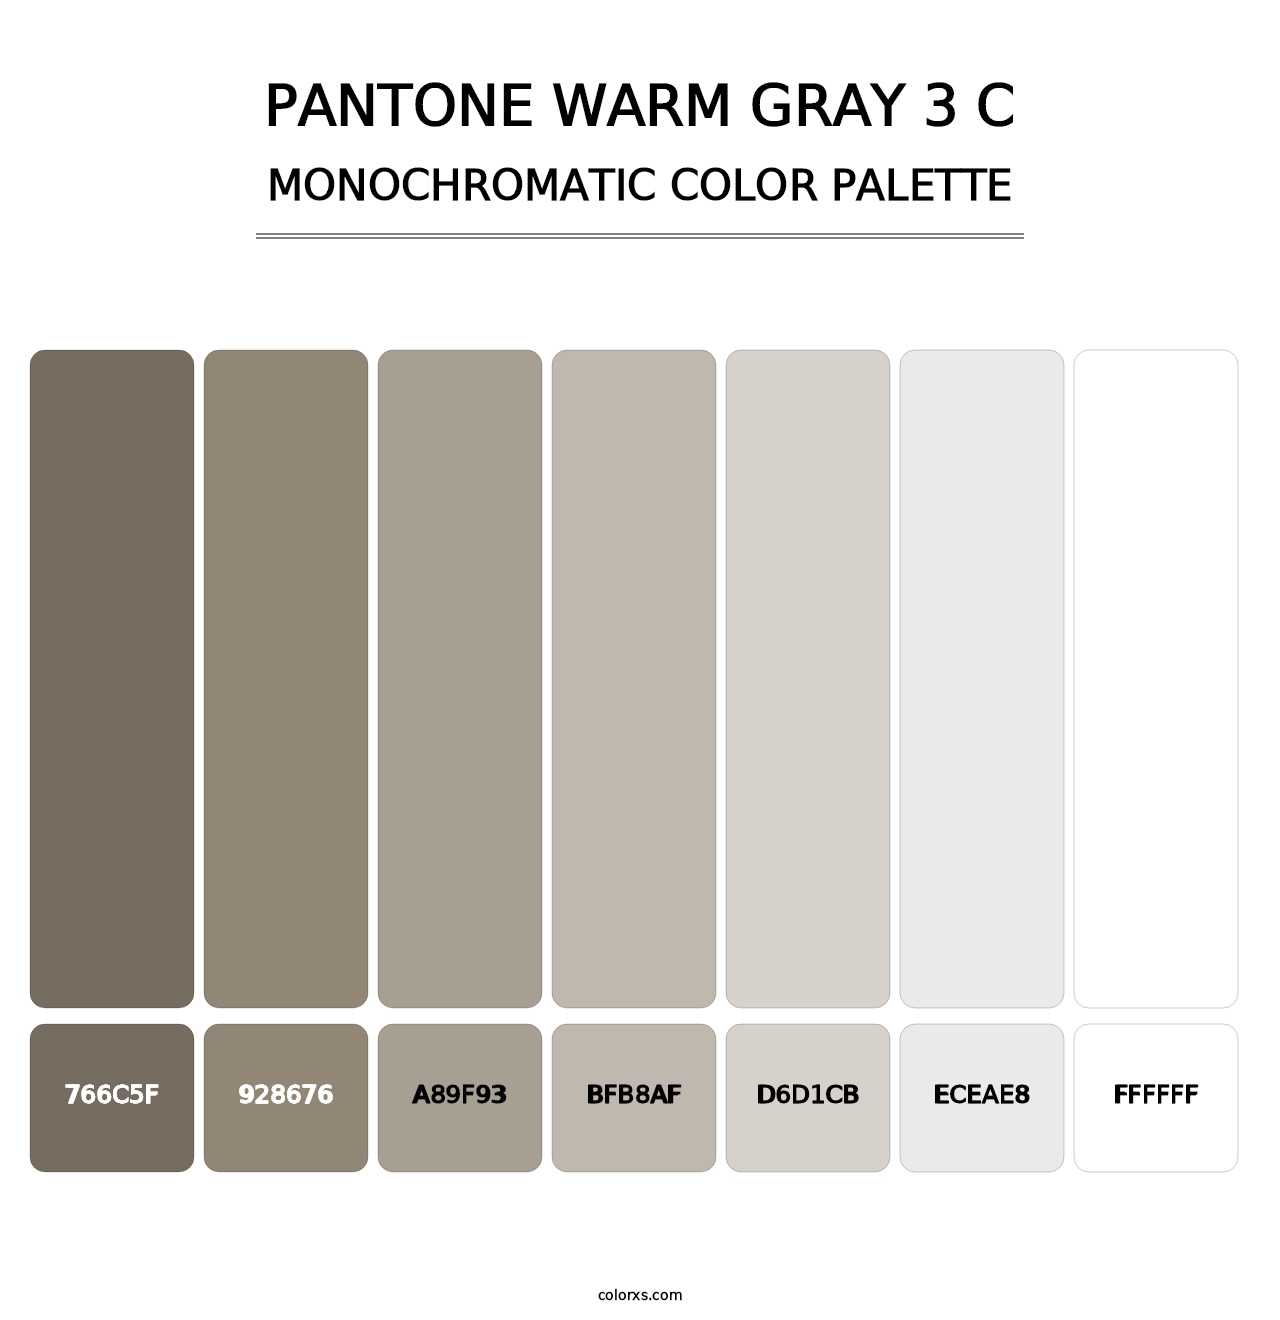 PANTONE Warm Gray 3 C - Monochromatic Color Palette